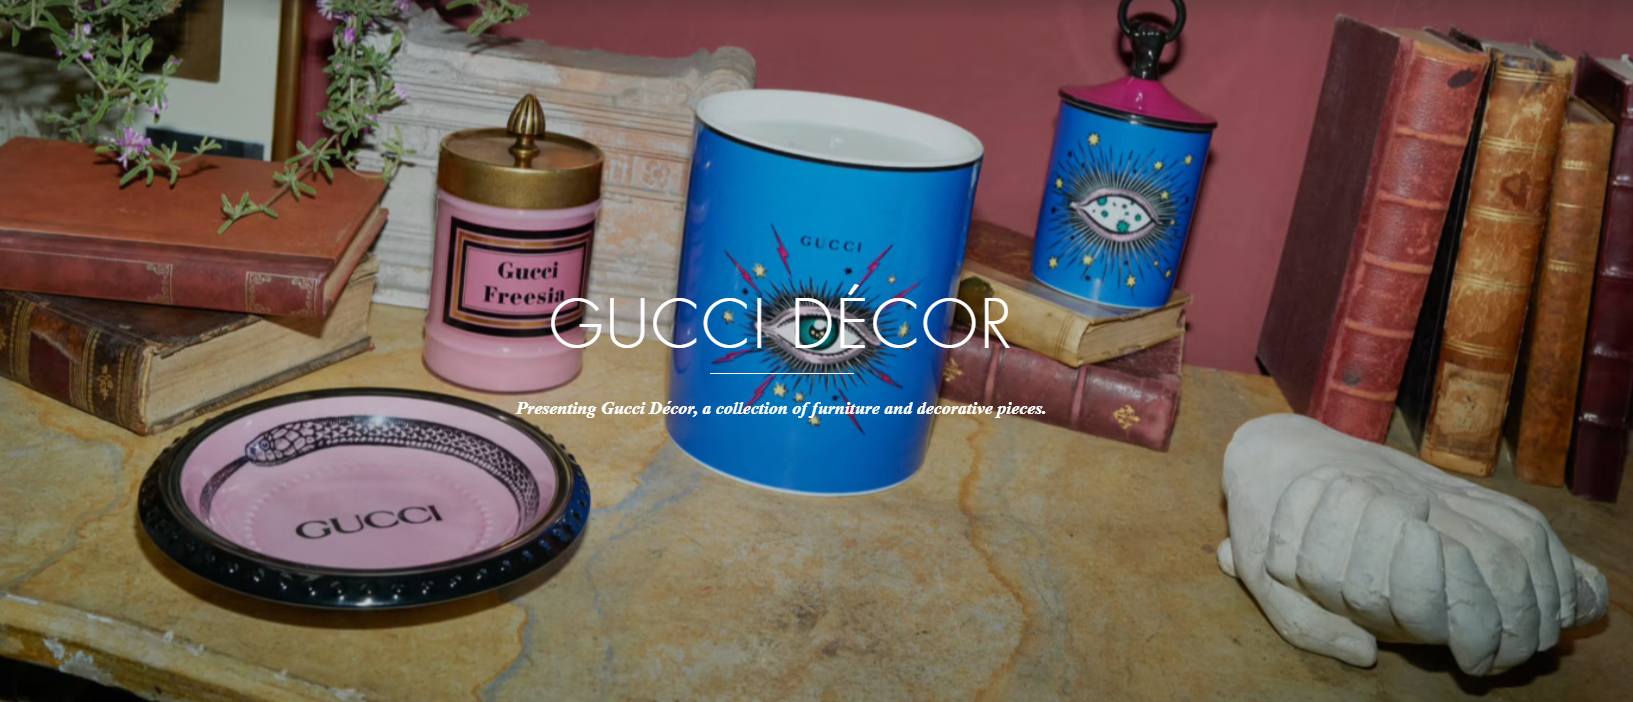 Gucci Home Decor